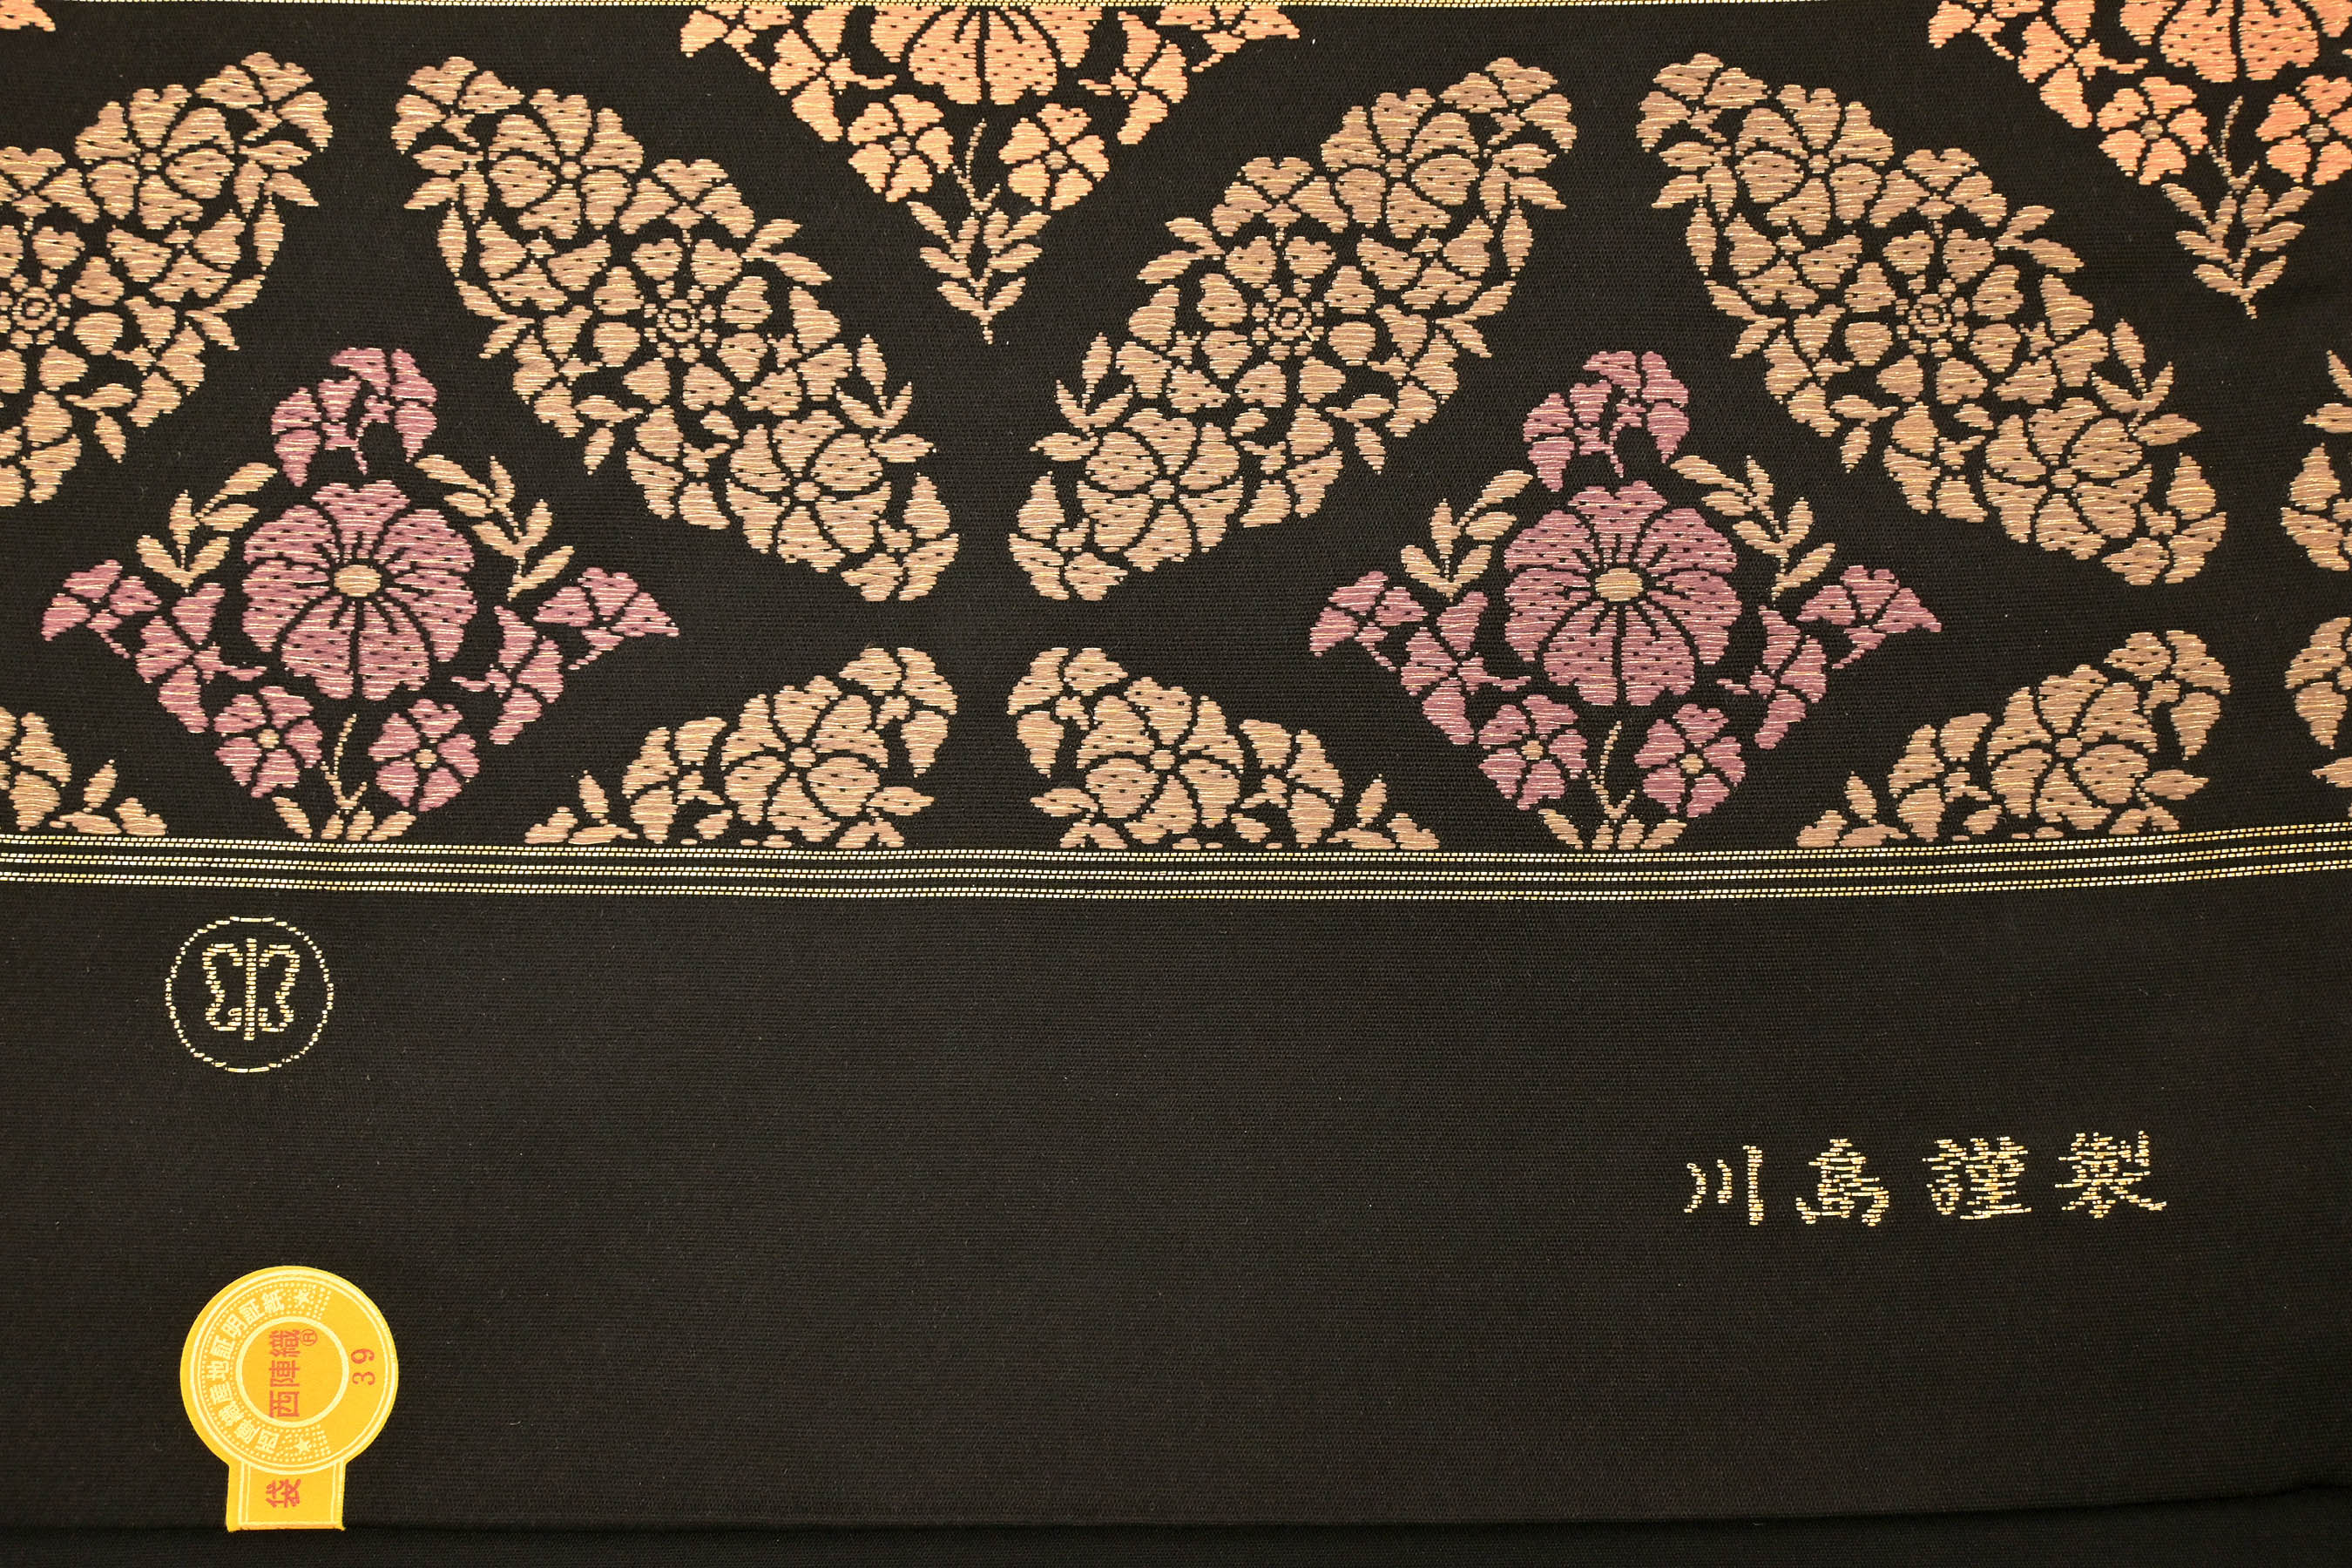 川島織物 特選西陣織袋帯 小花七宝 老舗のシックなフォーマル帯 訪問着 付下げと合わせて格調高い 着姿に 京都きもの市場 日本最大級の着物通販サイト